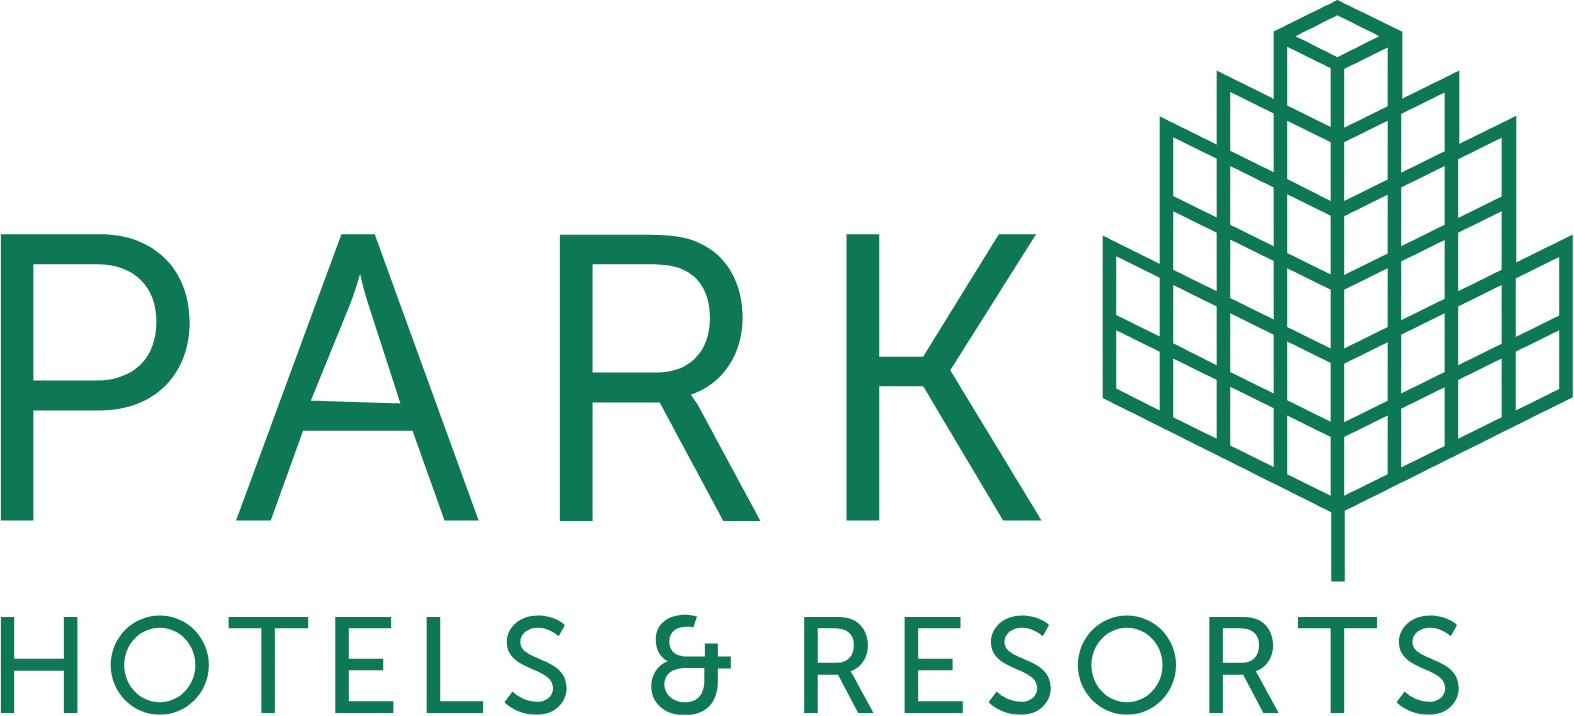 Park Hotels & Resorts

 logo large (transparent PNG)